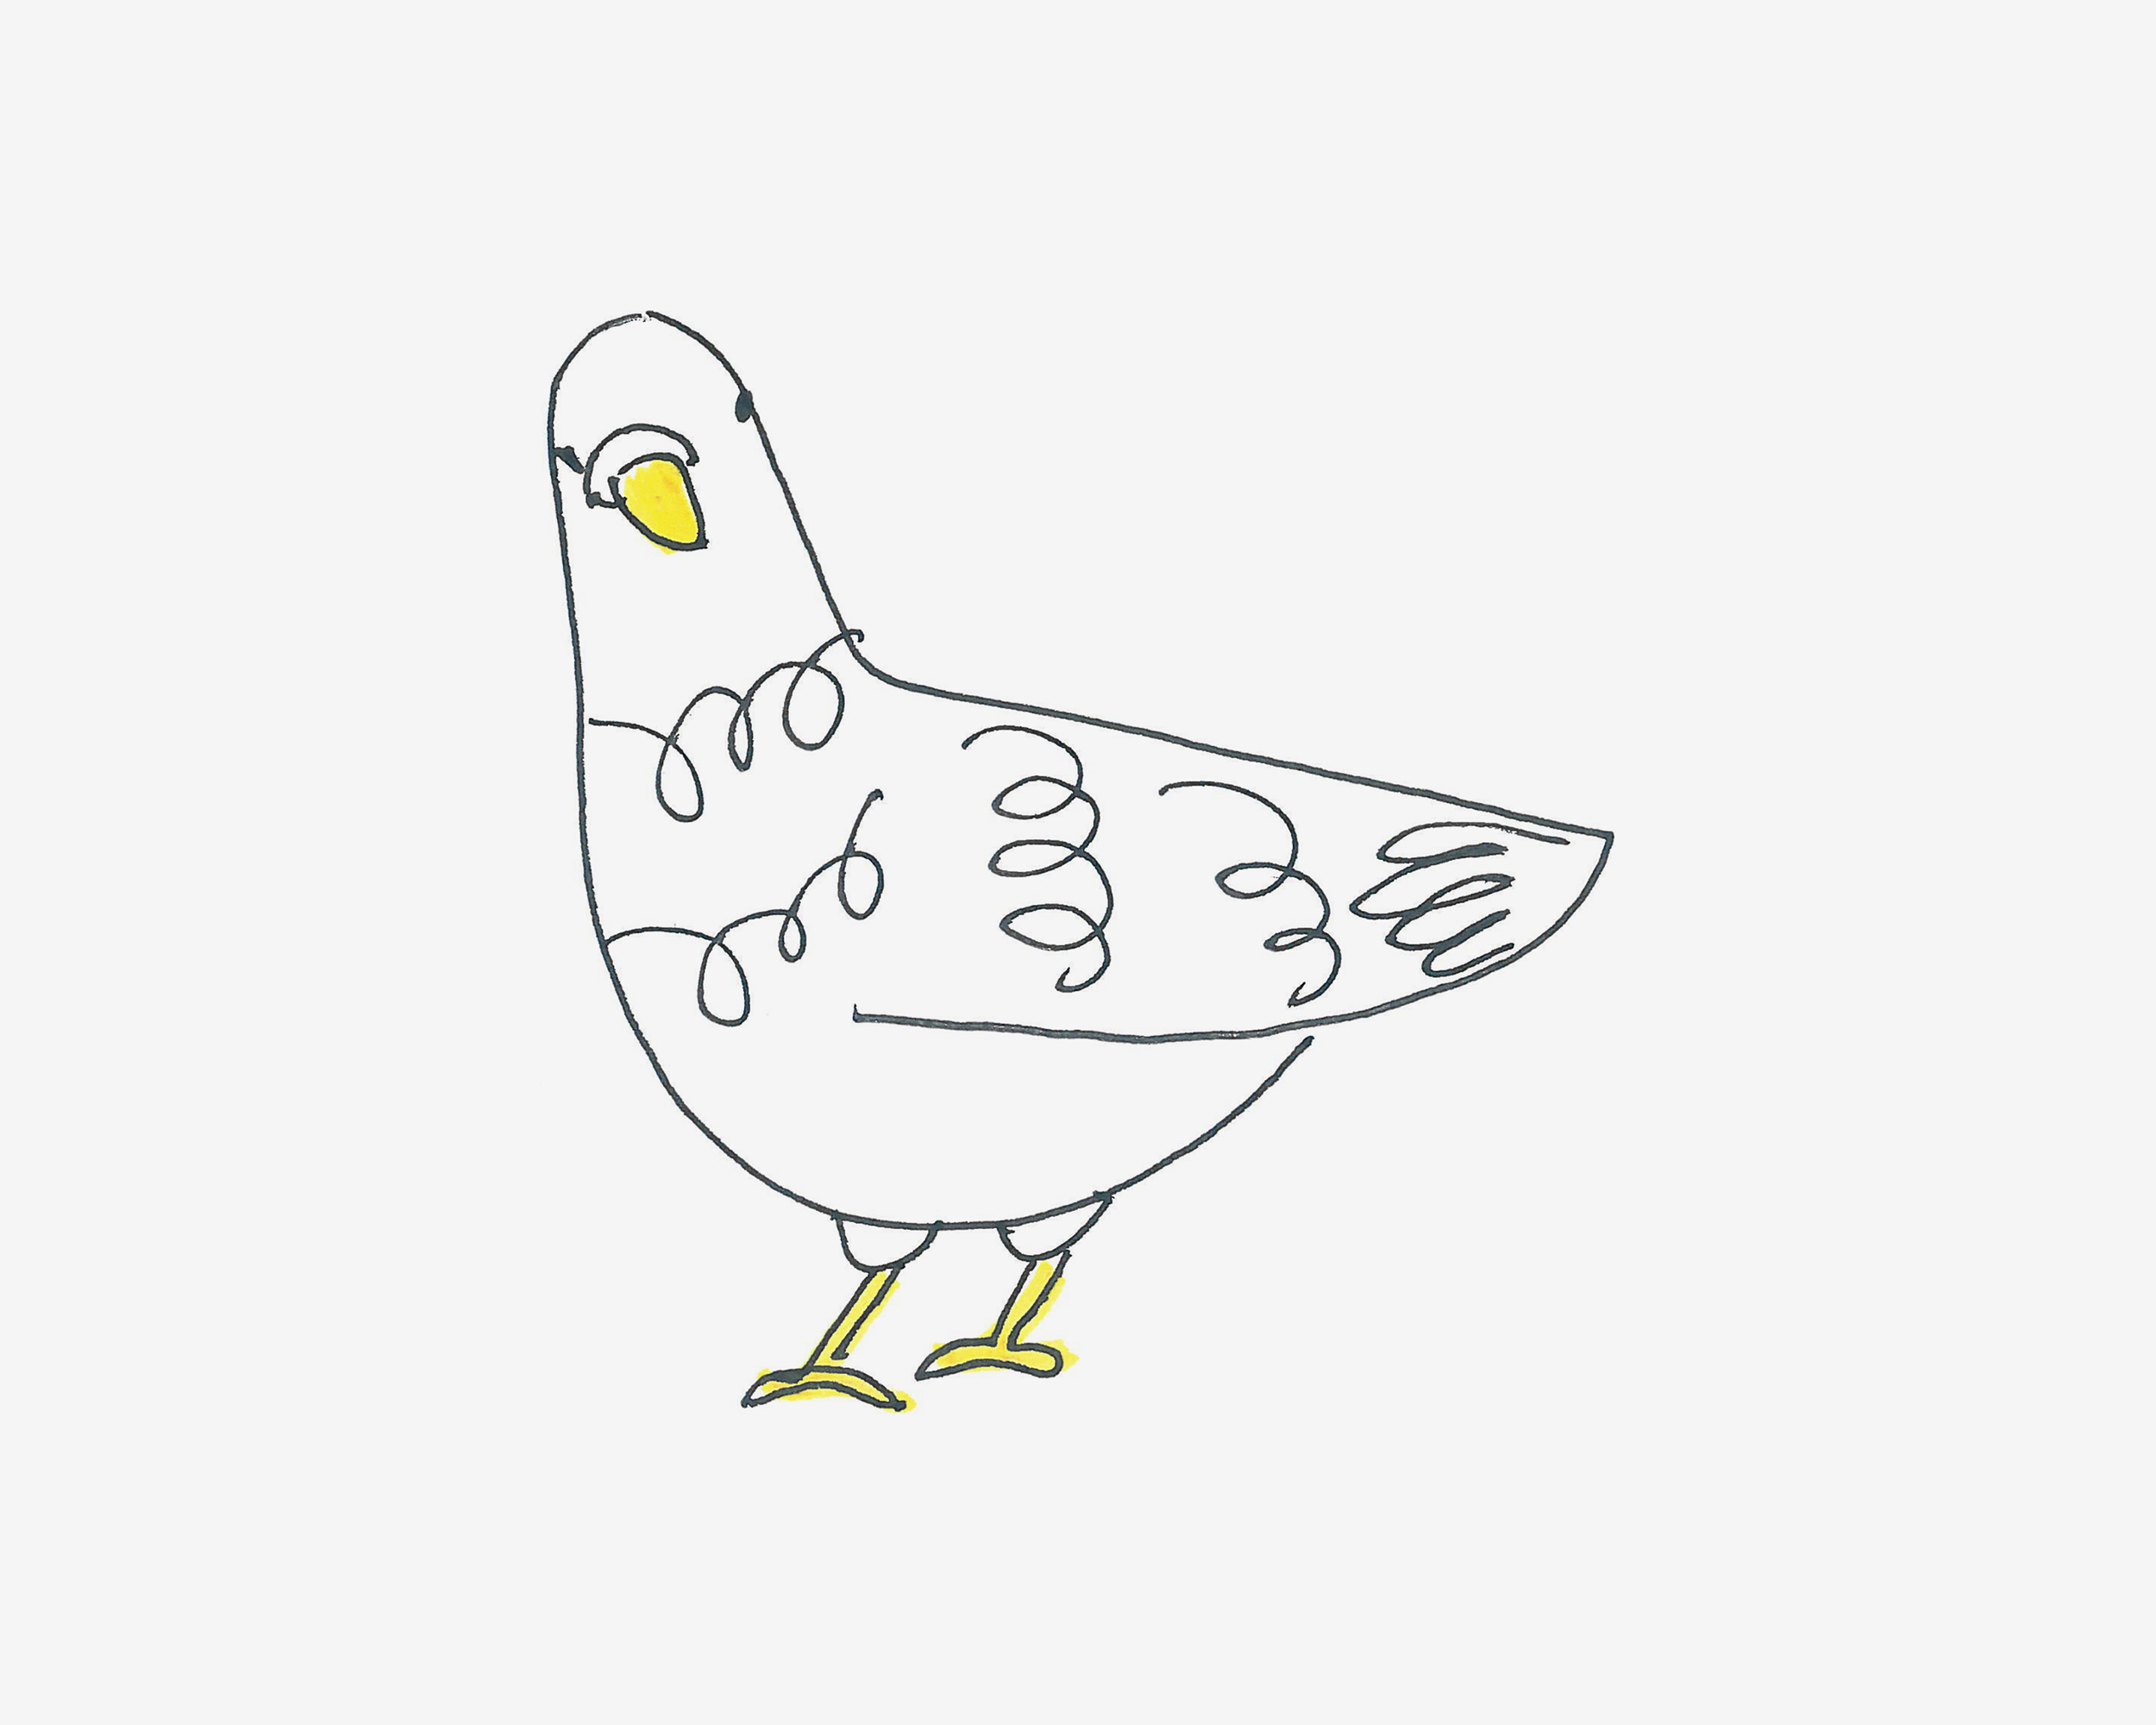 教你如何画鸽子 小巧的鸽子儿童简笔画教程 肉丁儿童网